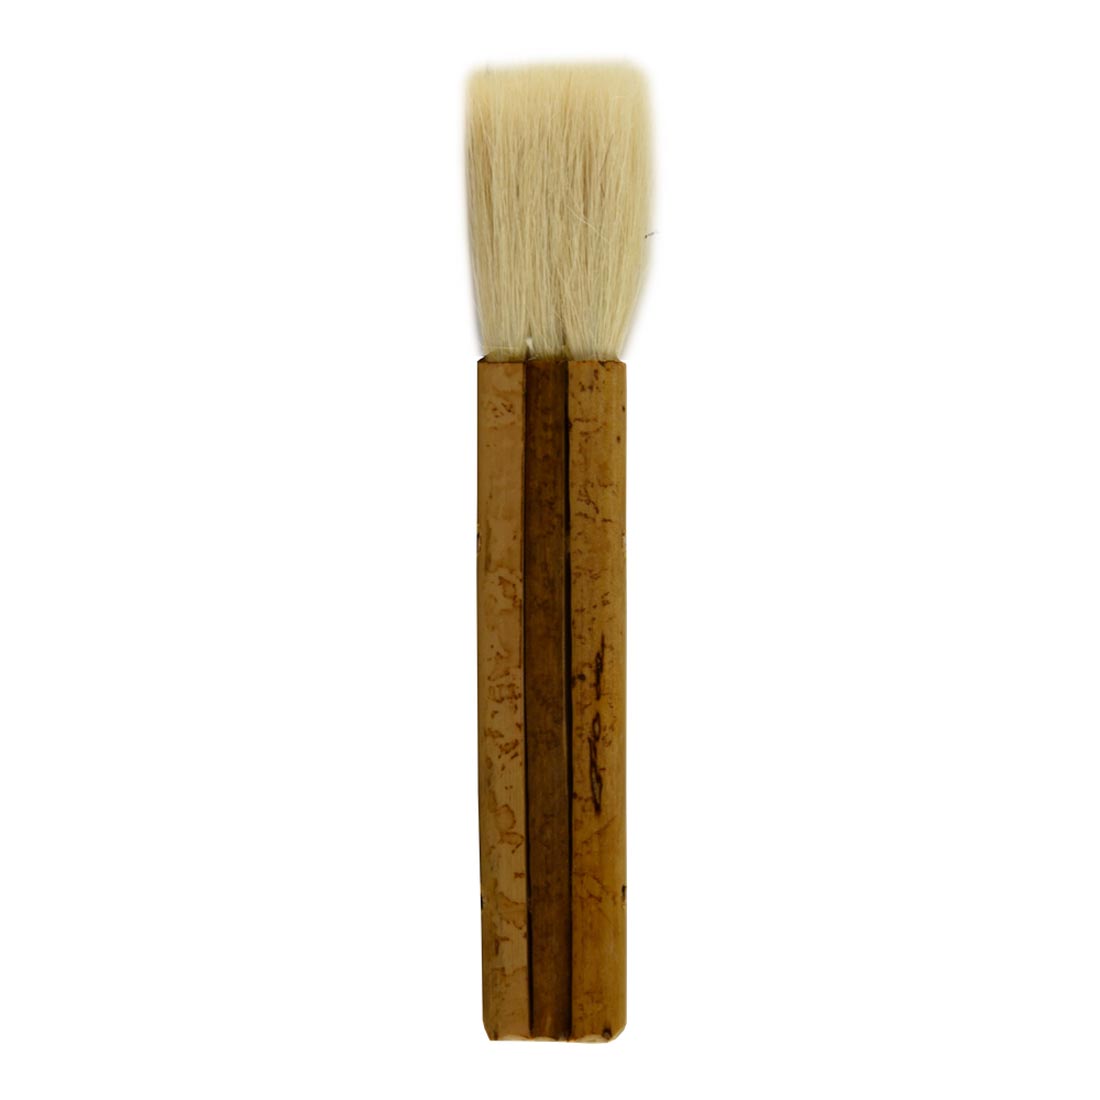 Yasutomo Hake Brush measuring 1"